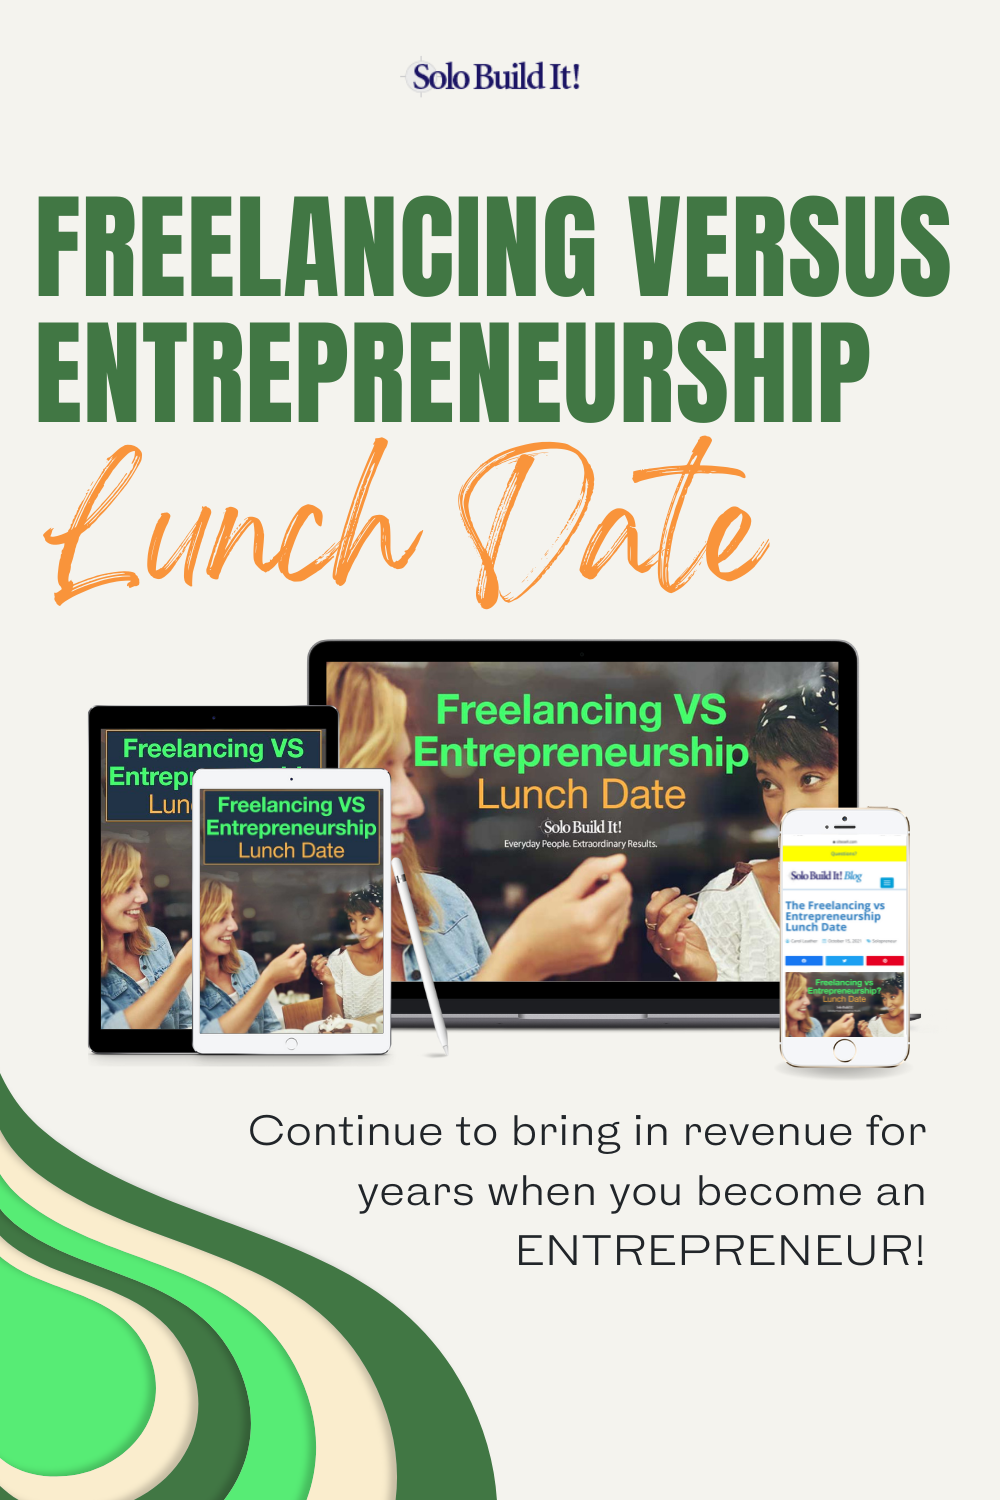 The Freelancing vs Entrepreneurship Lunch Date